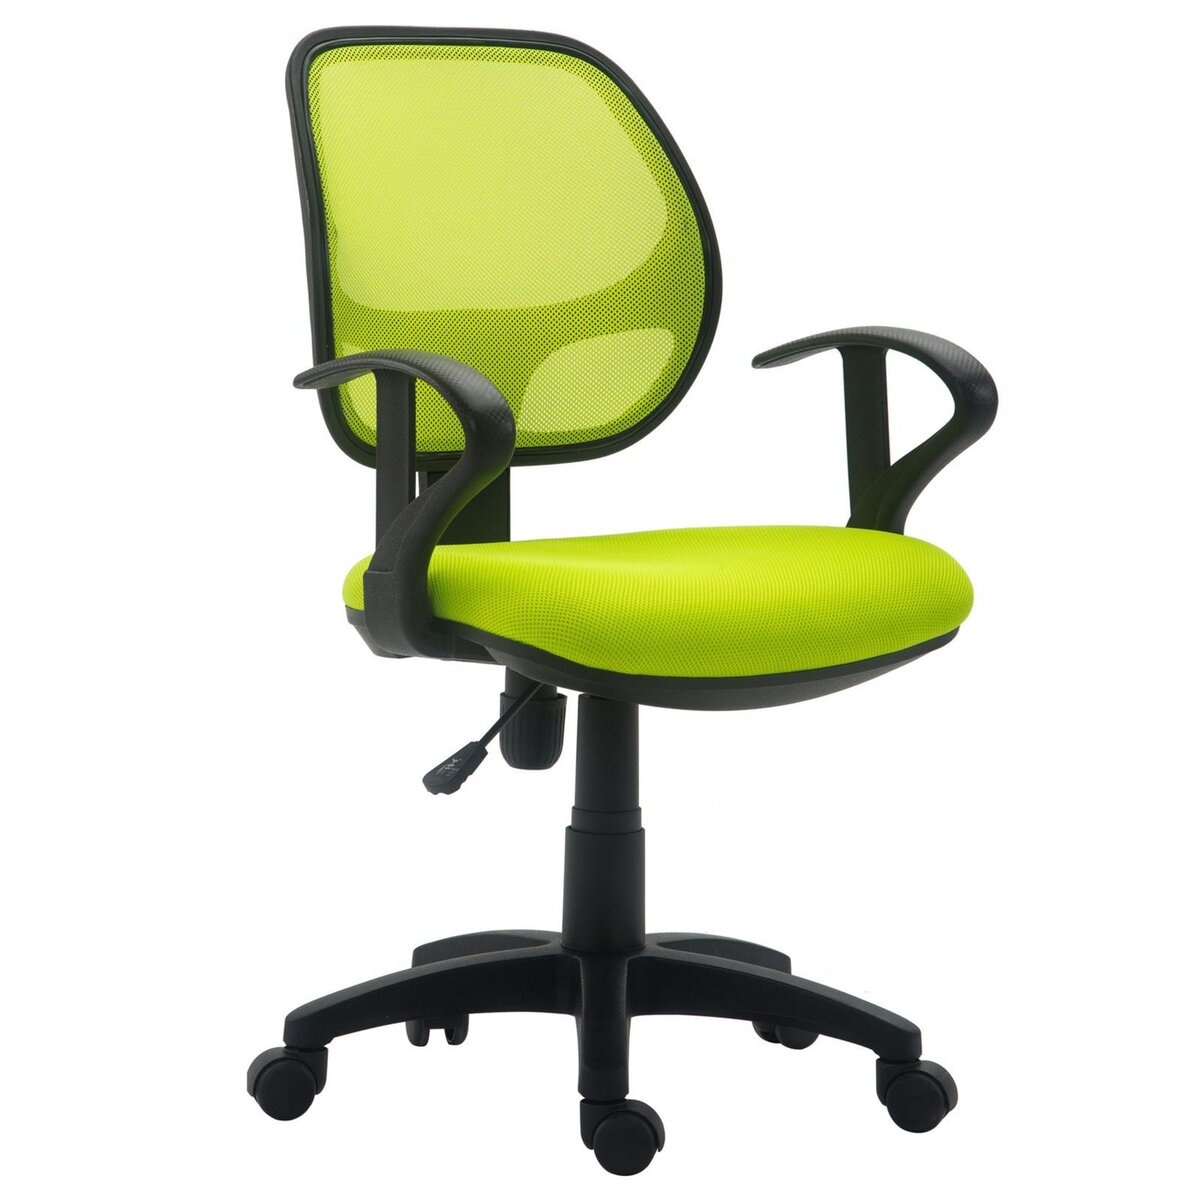 Chaise de bureau, fauteuil ergonomique, siège pivotant, réglable